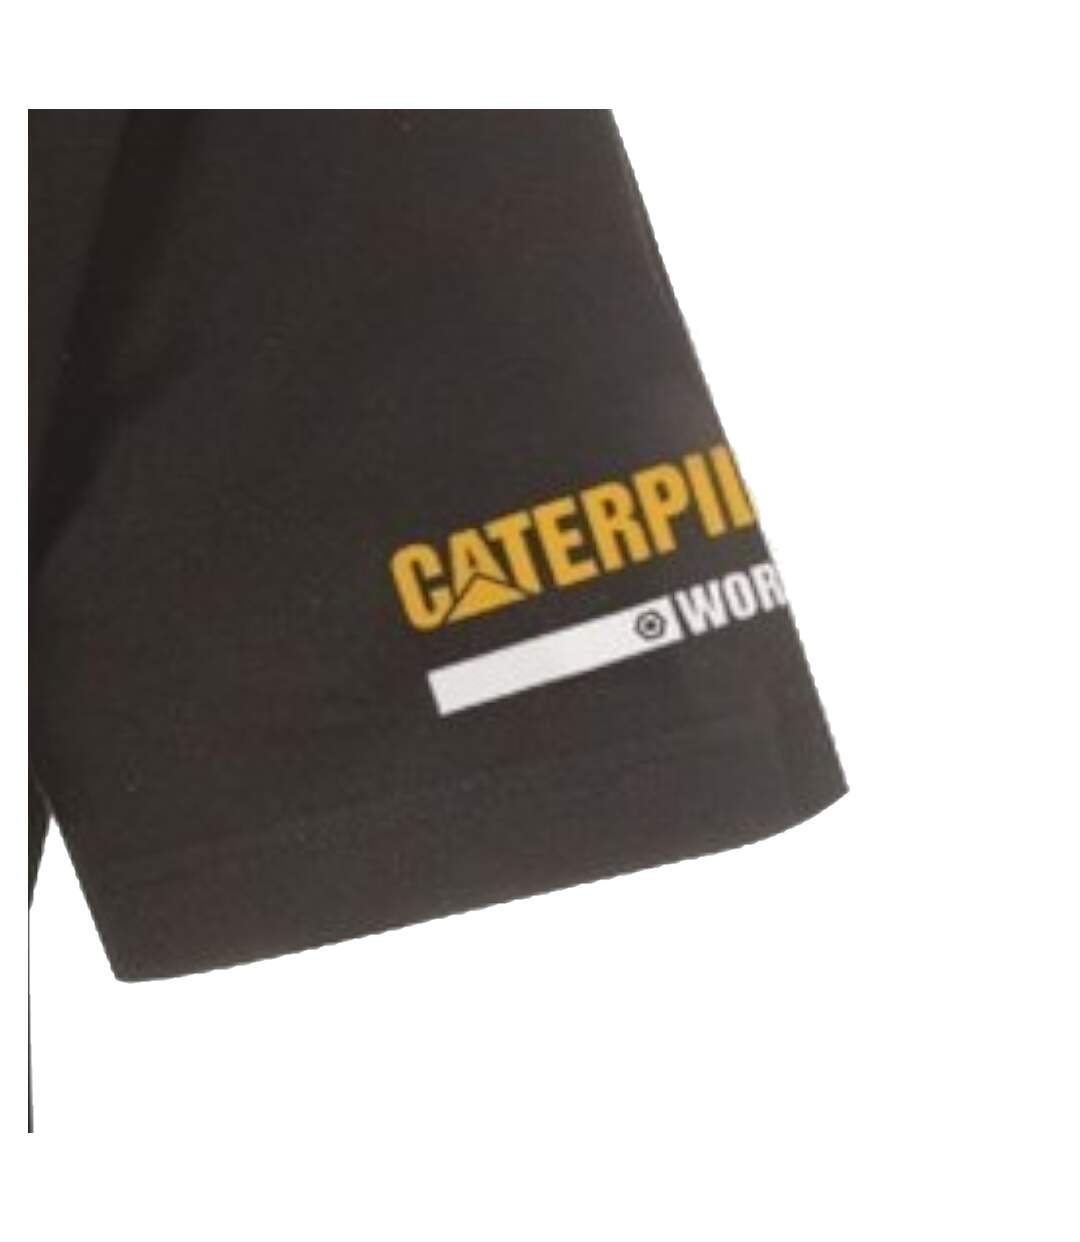 Caterpillar Essentials T-Shirt (Black) - UTFS6373